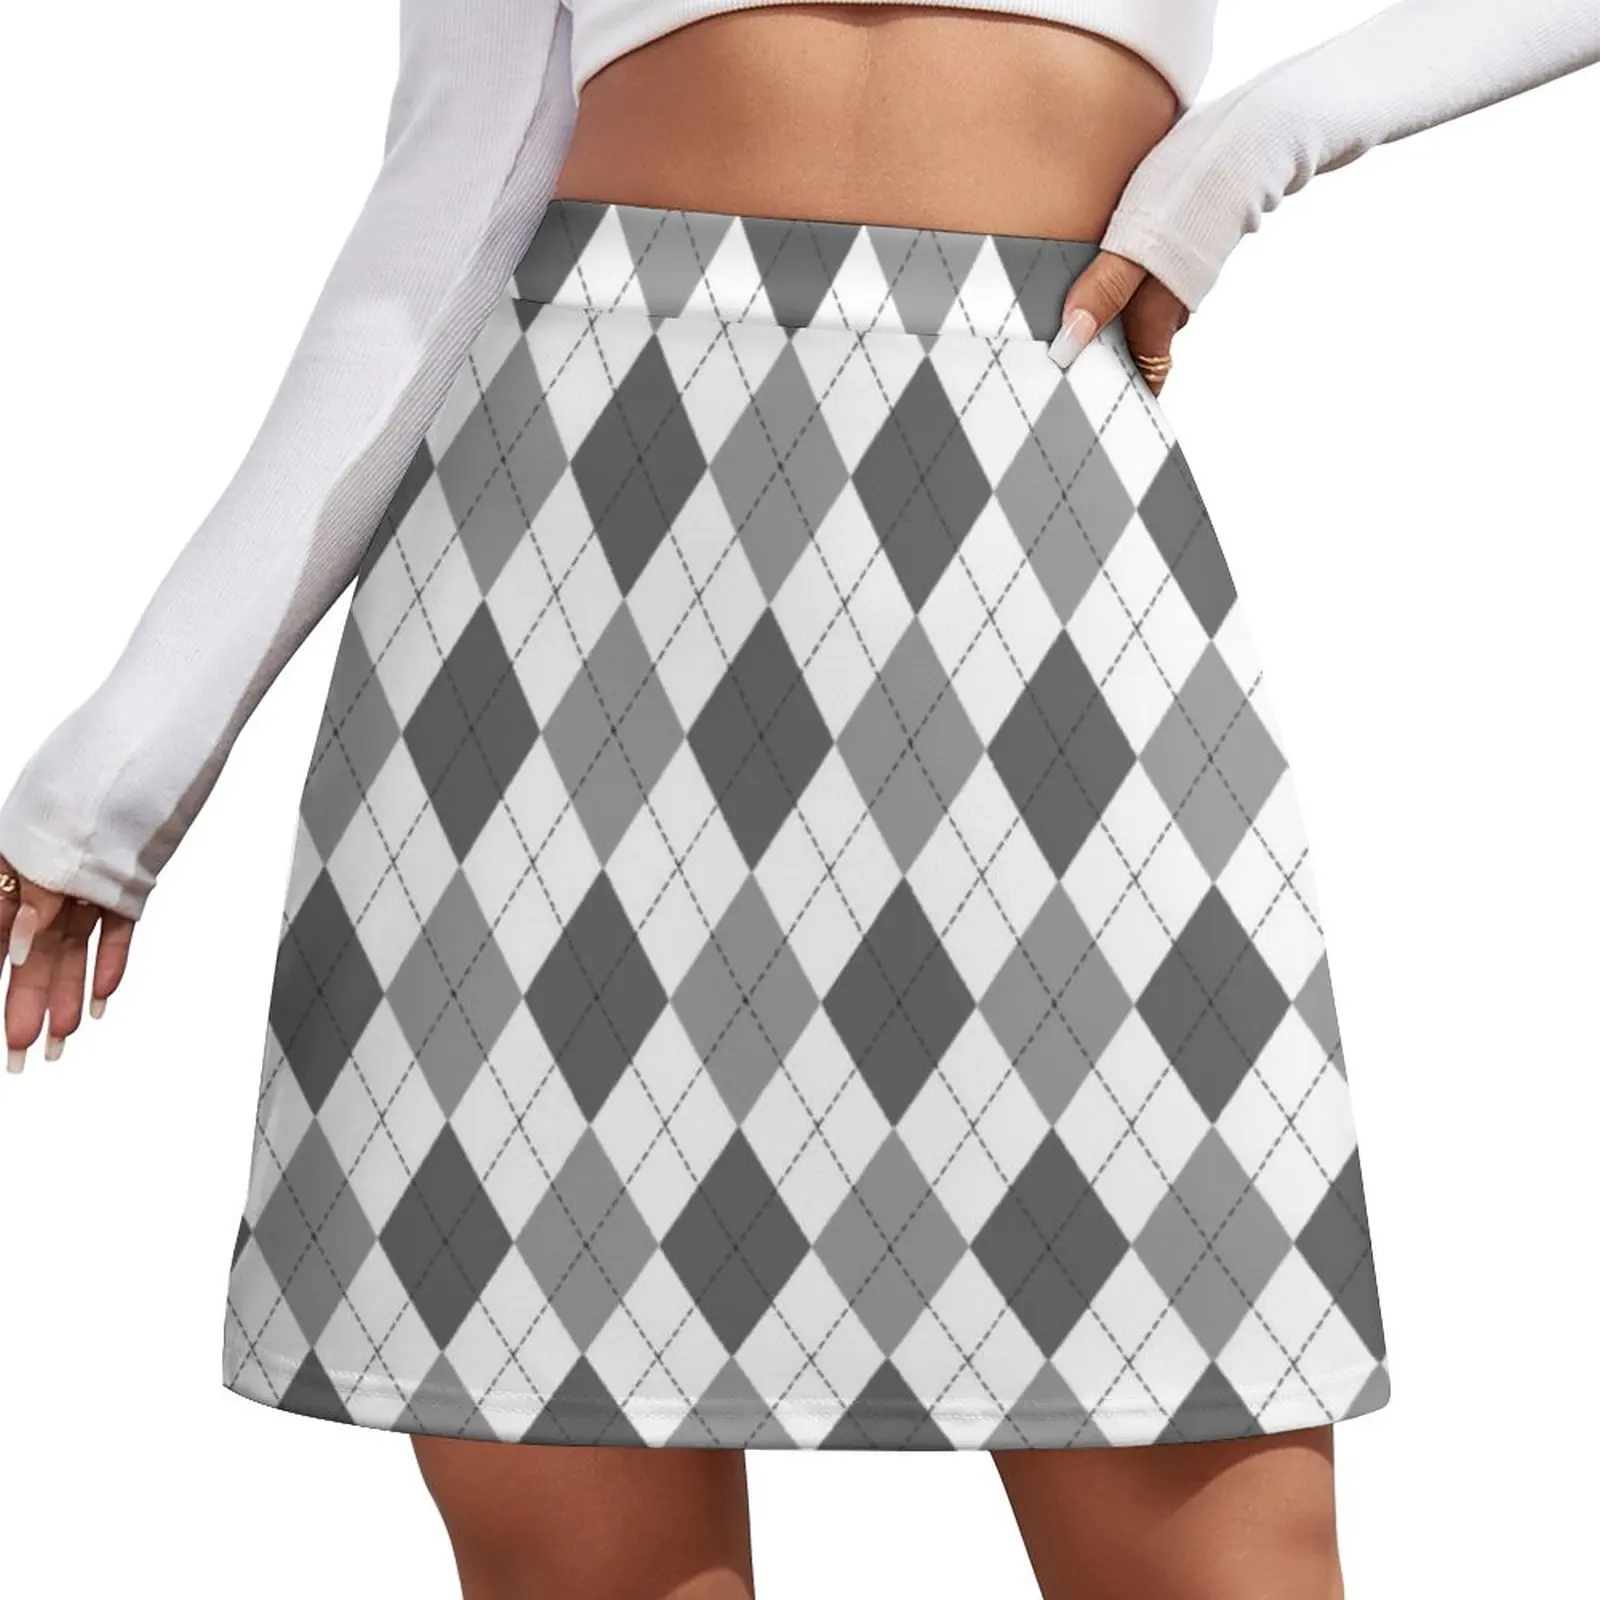 Grey: Argyle Pattern Mini Skirt skirt for women Woman short skirt shorts [fila]argyle pattern men s drawers